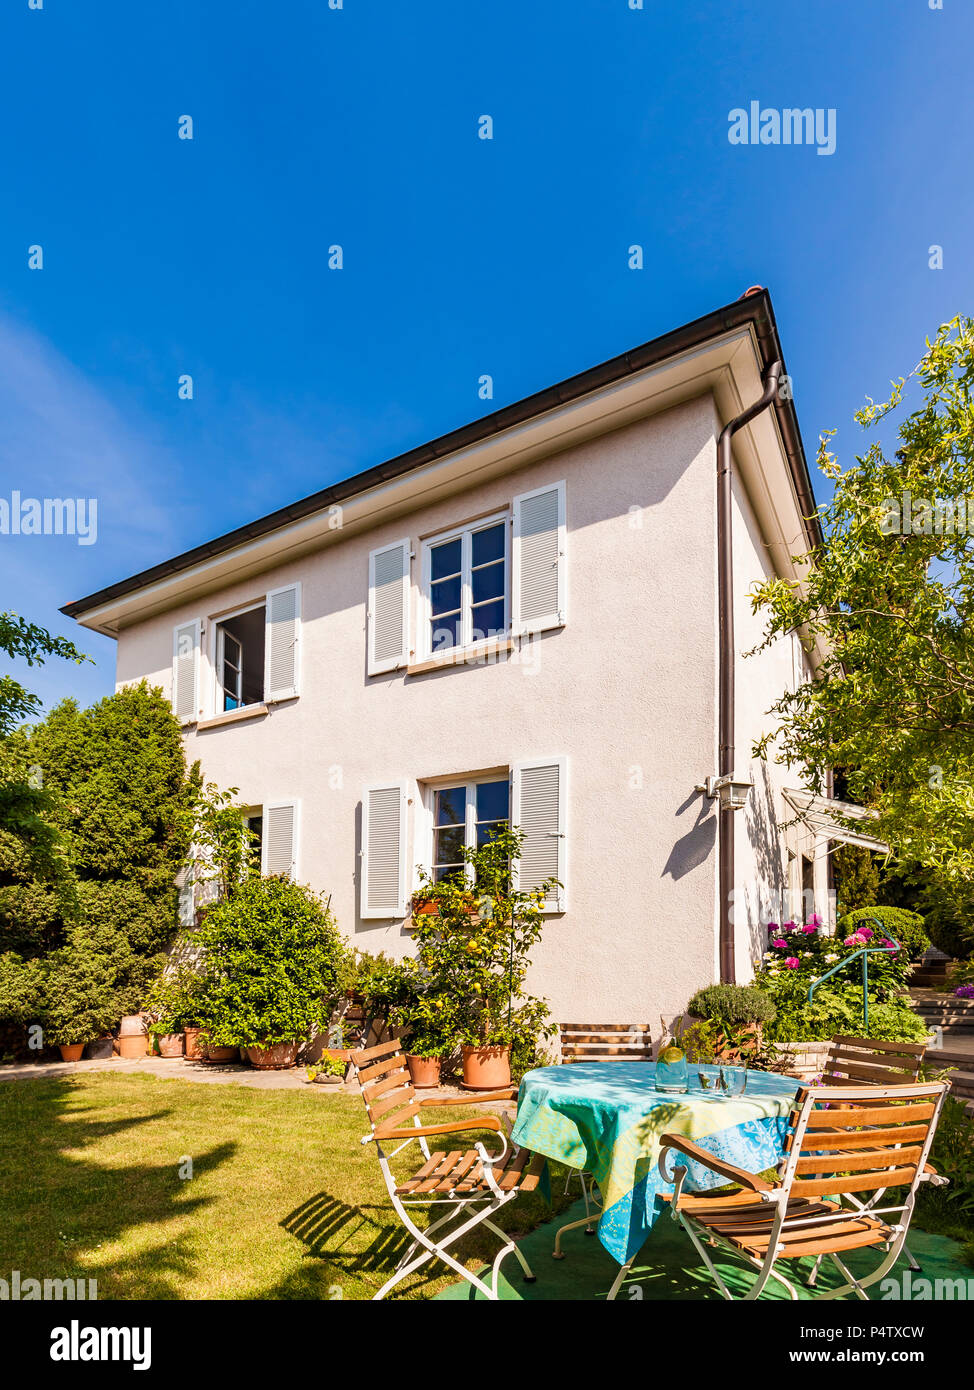 Allemagne, Stuttgart, une maison d'habitation, jardin, table avec chaises Banque D'Images